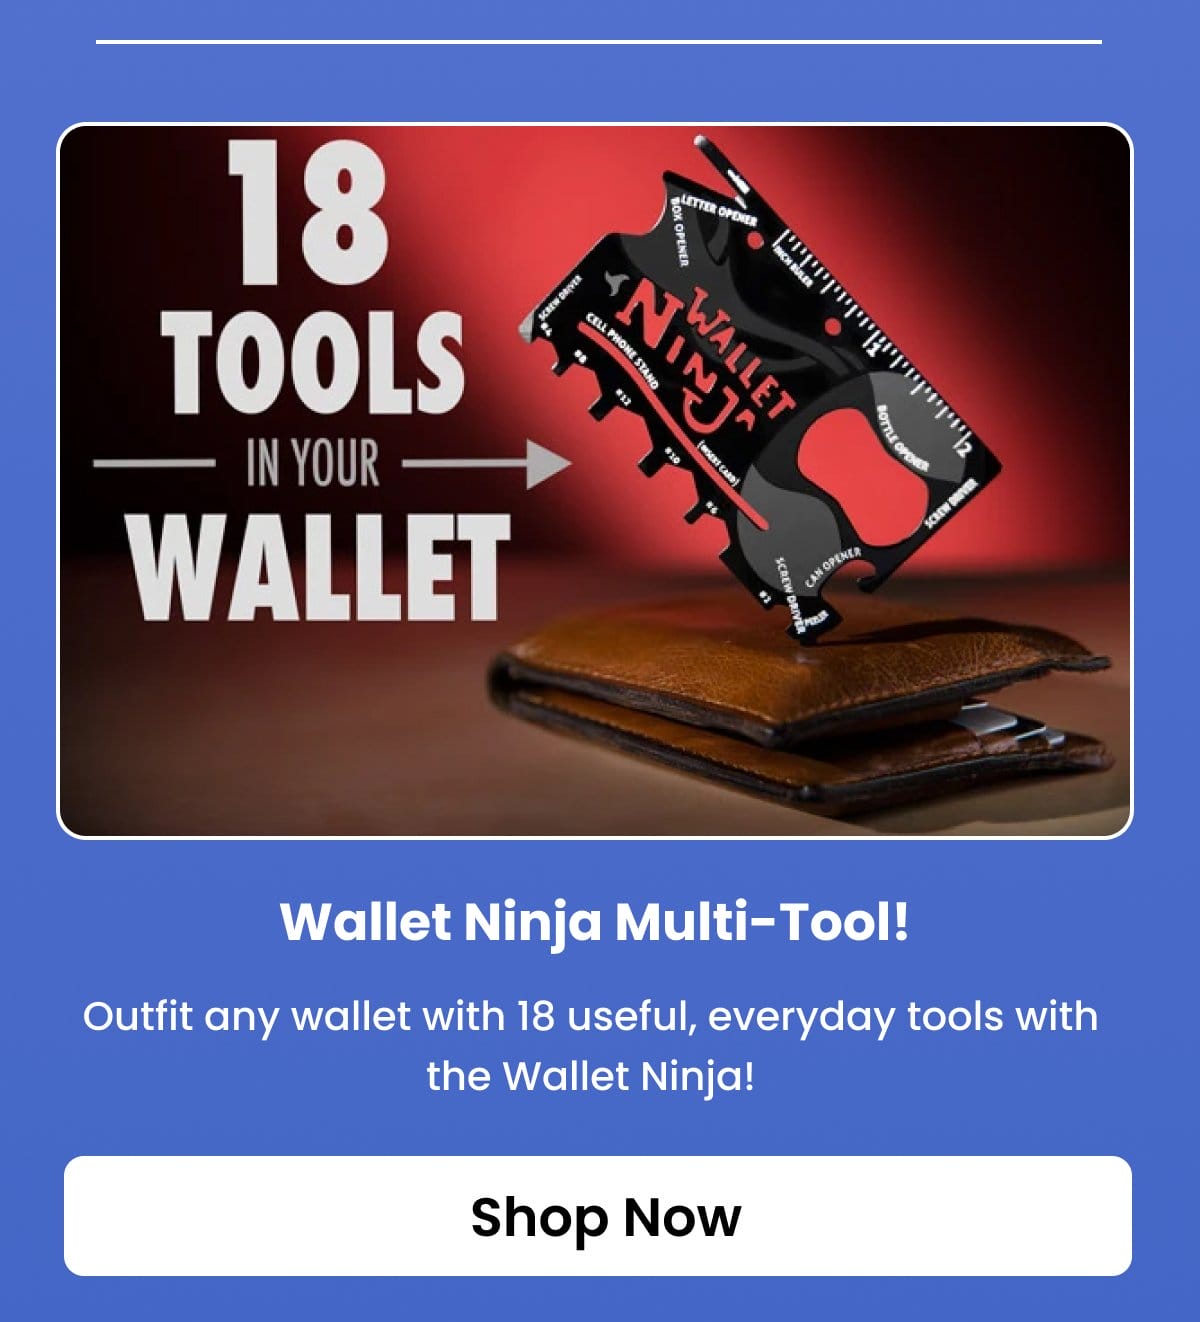 Wallet Ninja Multi-Tool